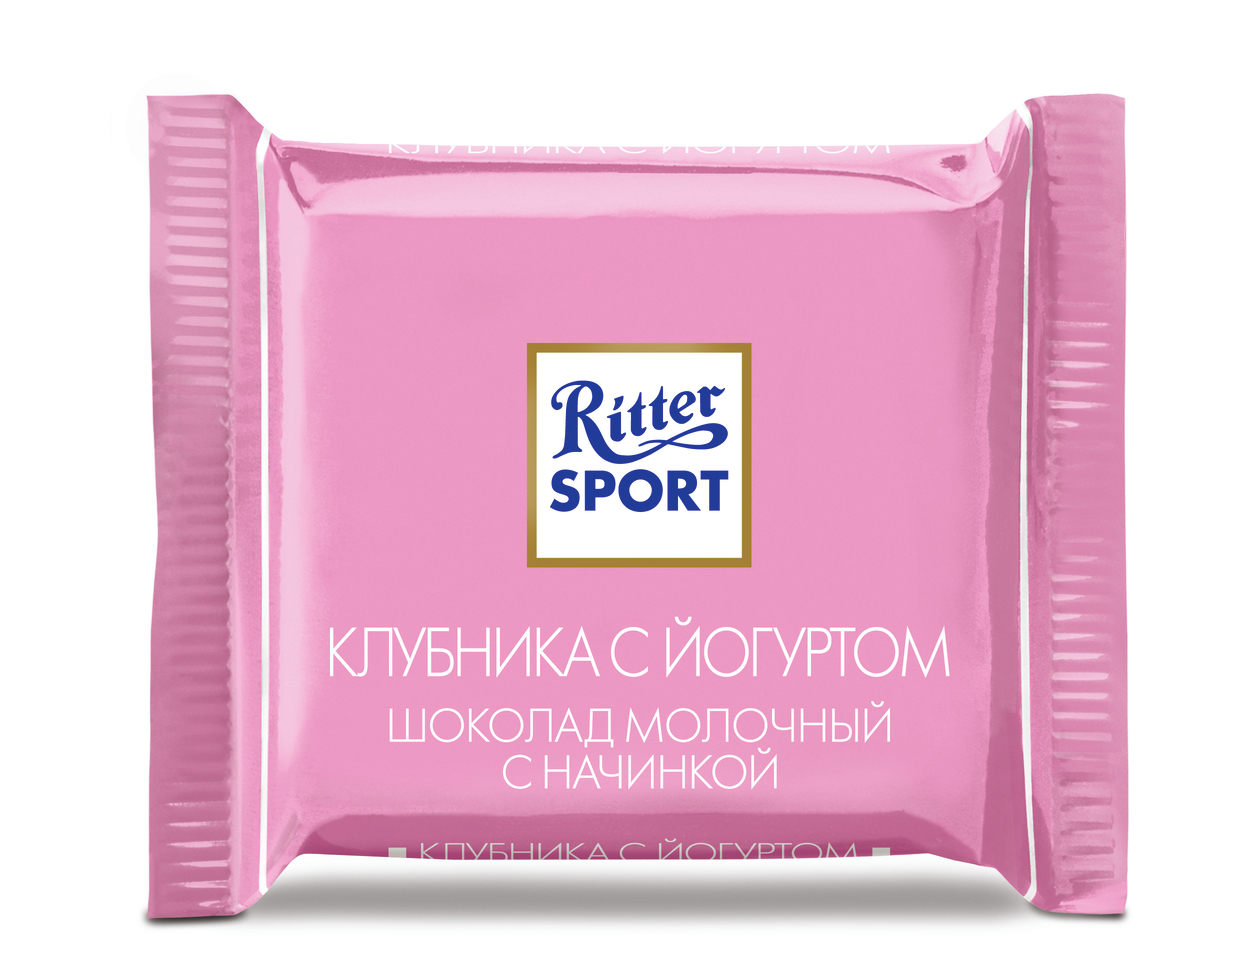 Шоколад Риттер Спорт Ассорти 7 вкусов 16,67г